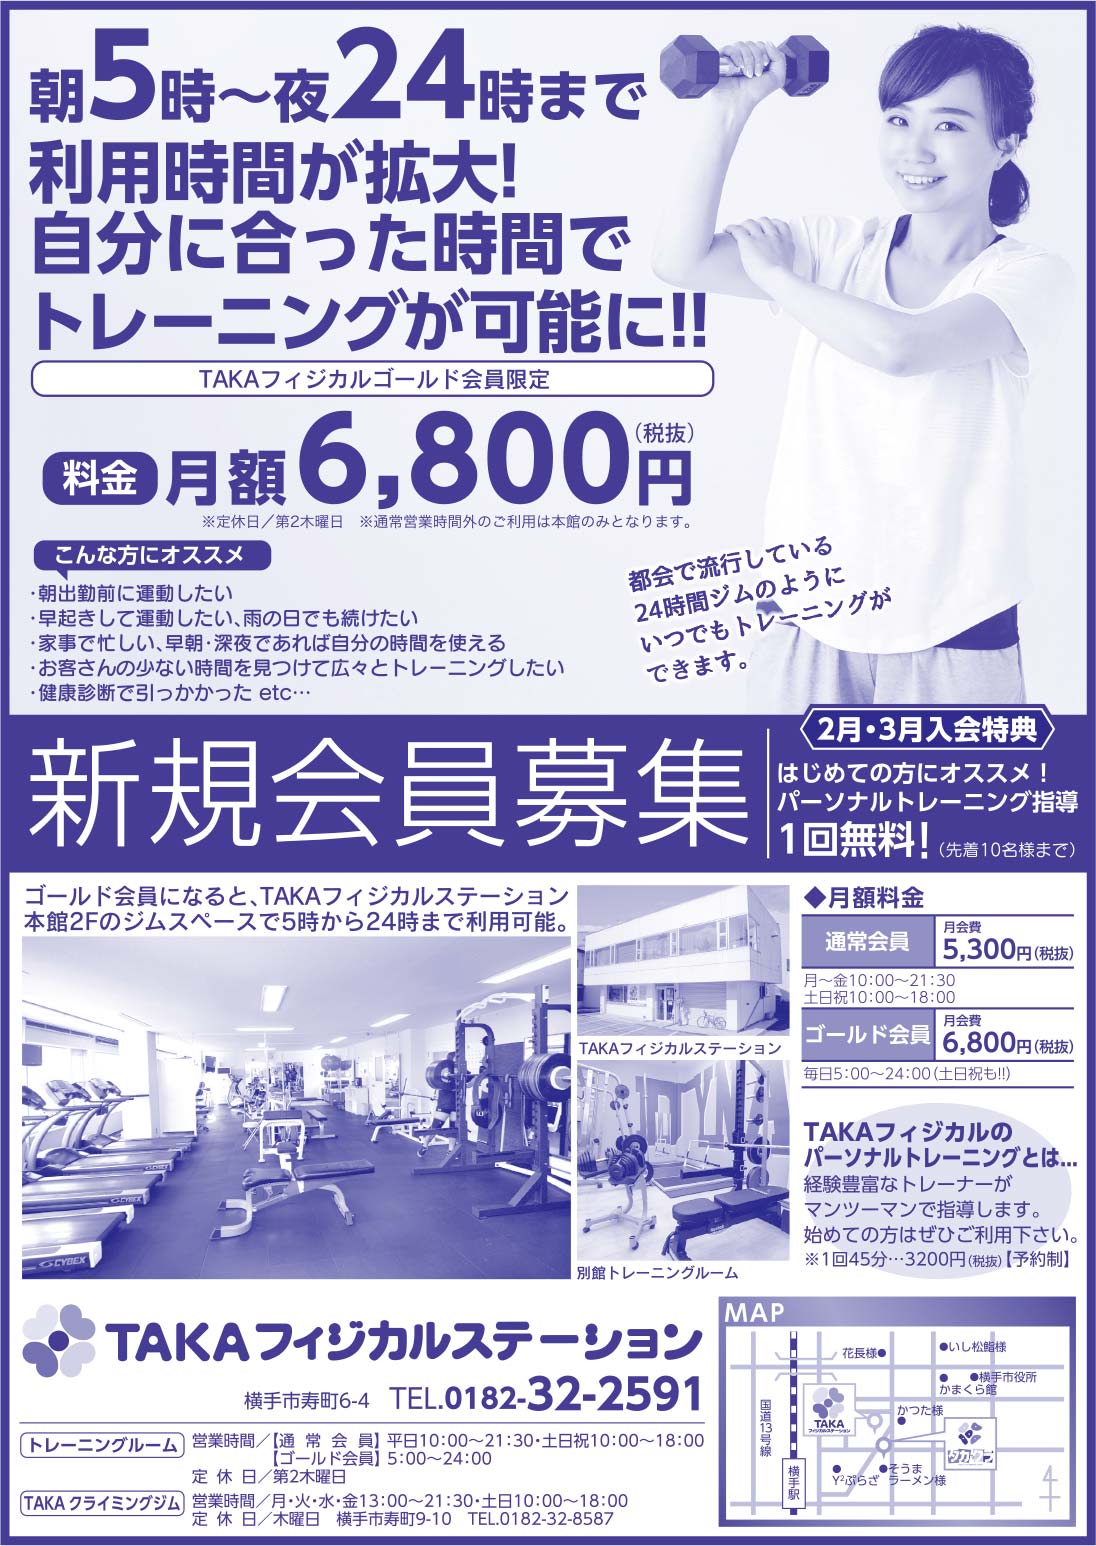 TAKAフィジカルステーション様の2020.02.14号広告